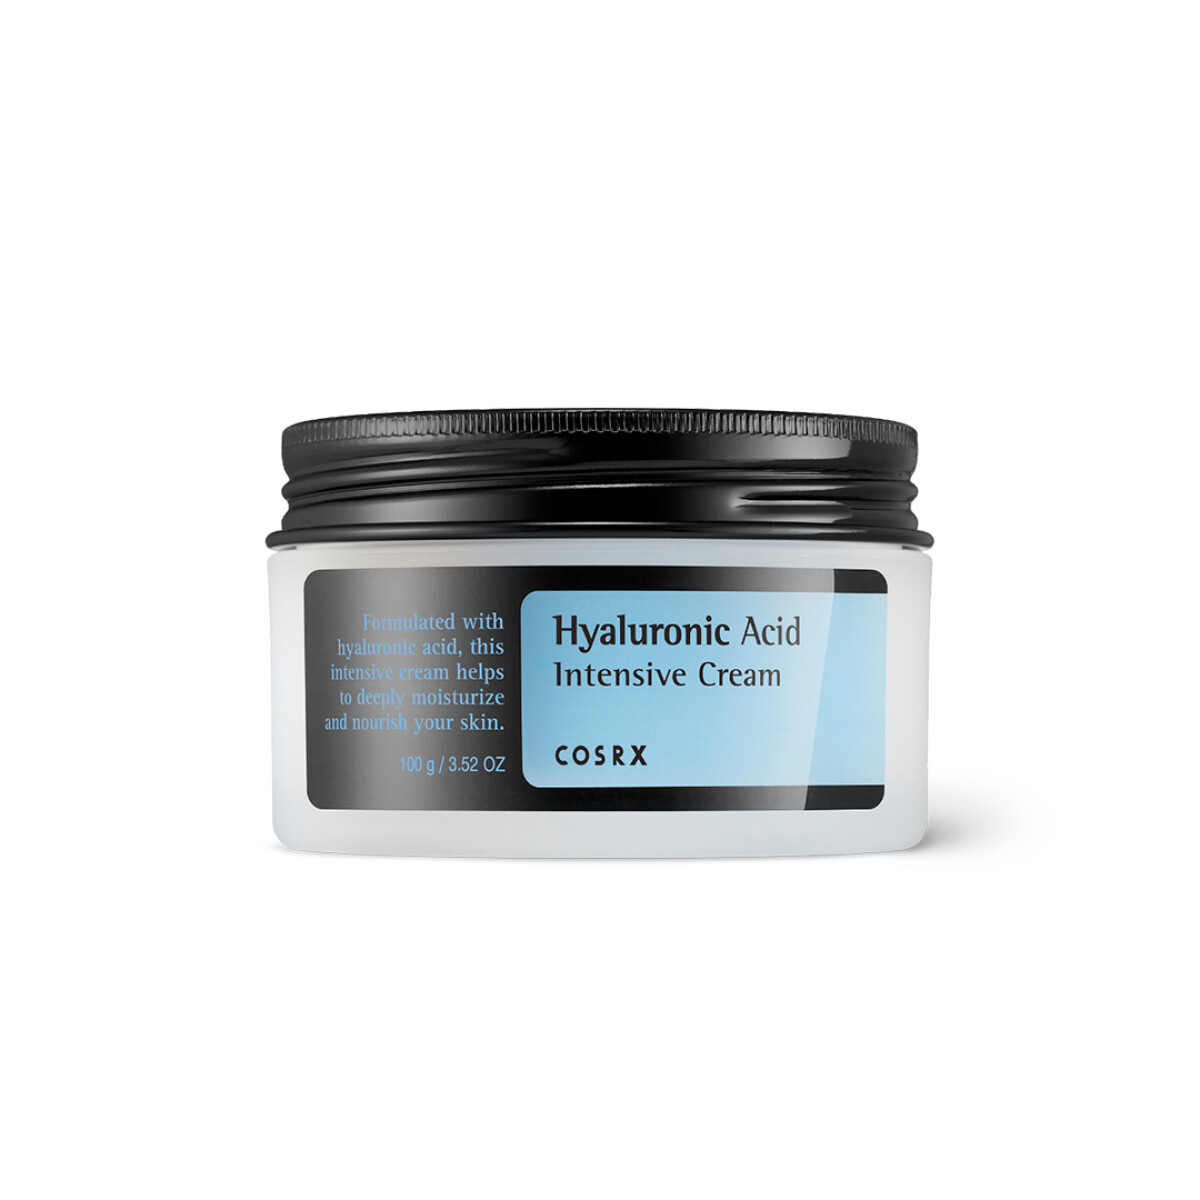 HYALURONIC ACID INTENSIVE CREAM COSRX (Crema hidratante y antiage de ácido hialurónico) 